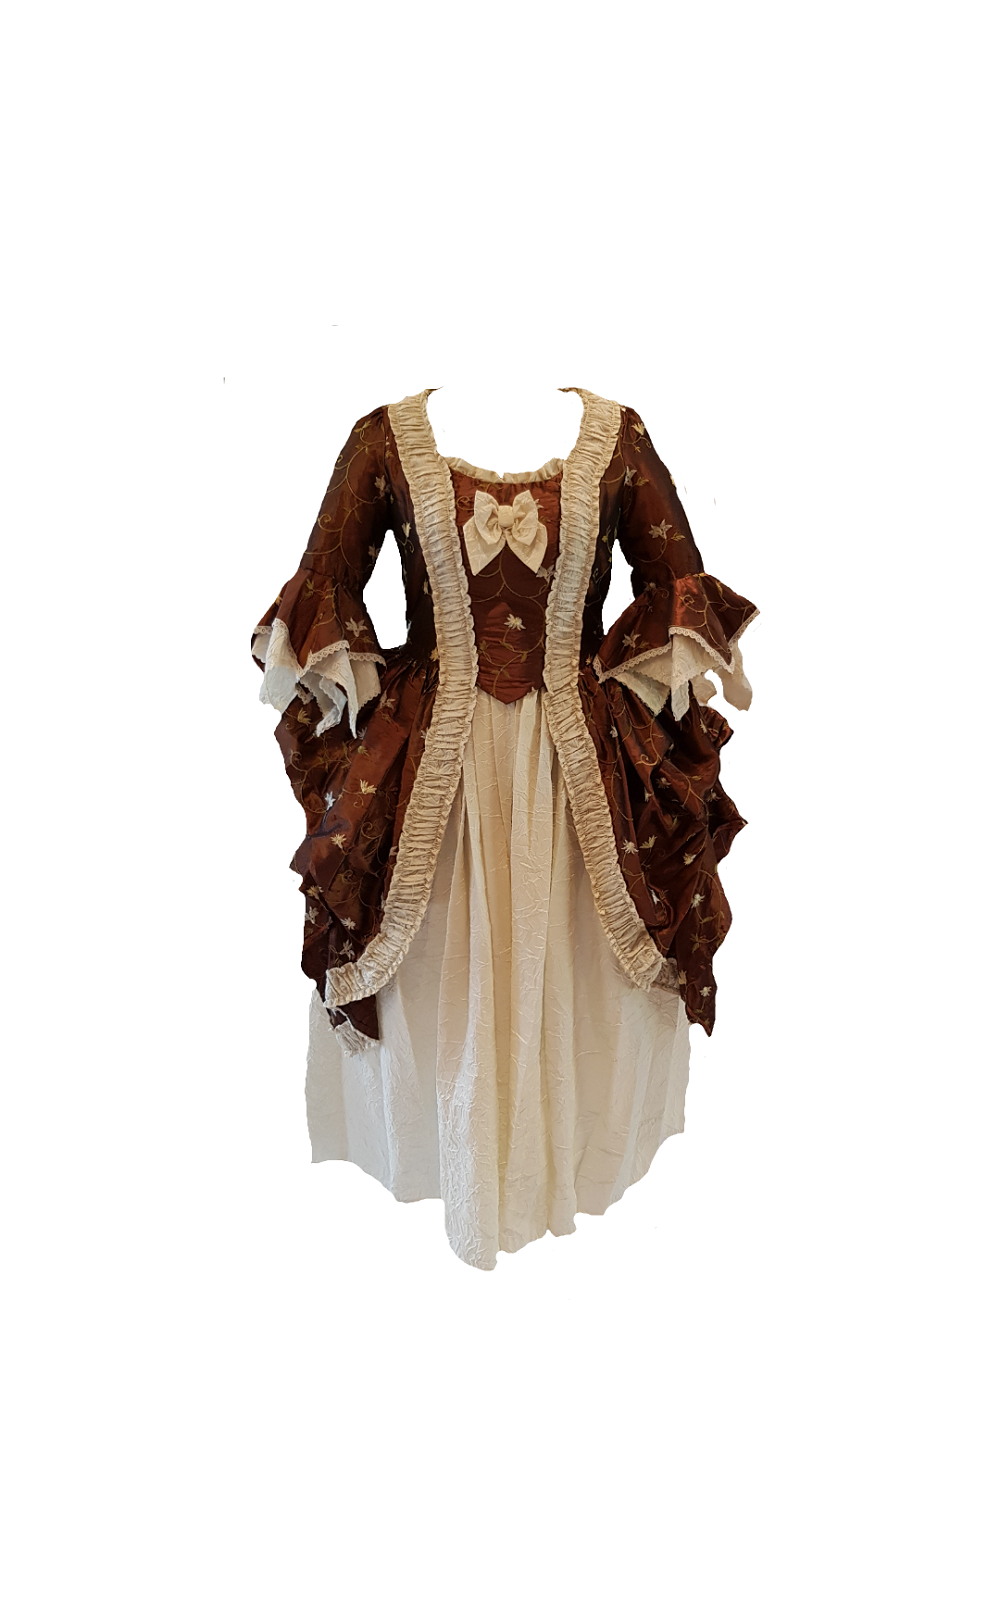 bespoke 18th century costume hire